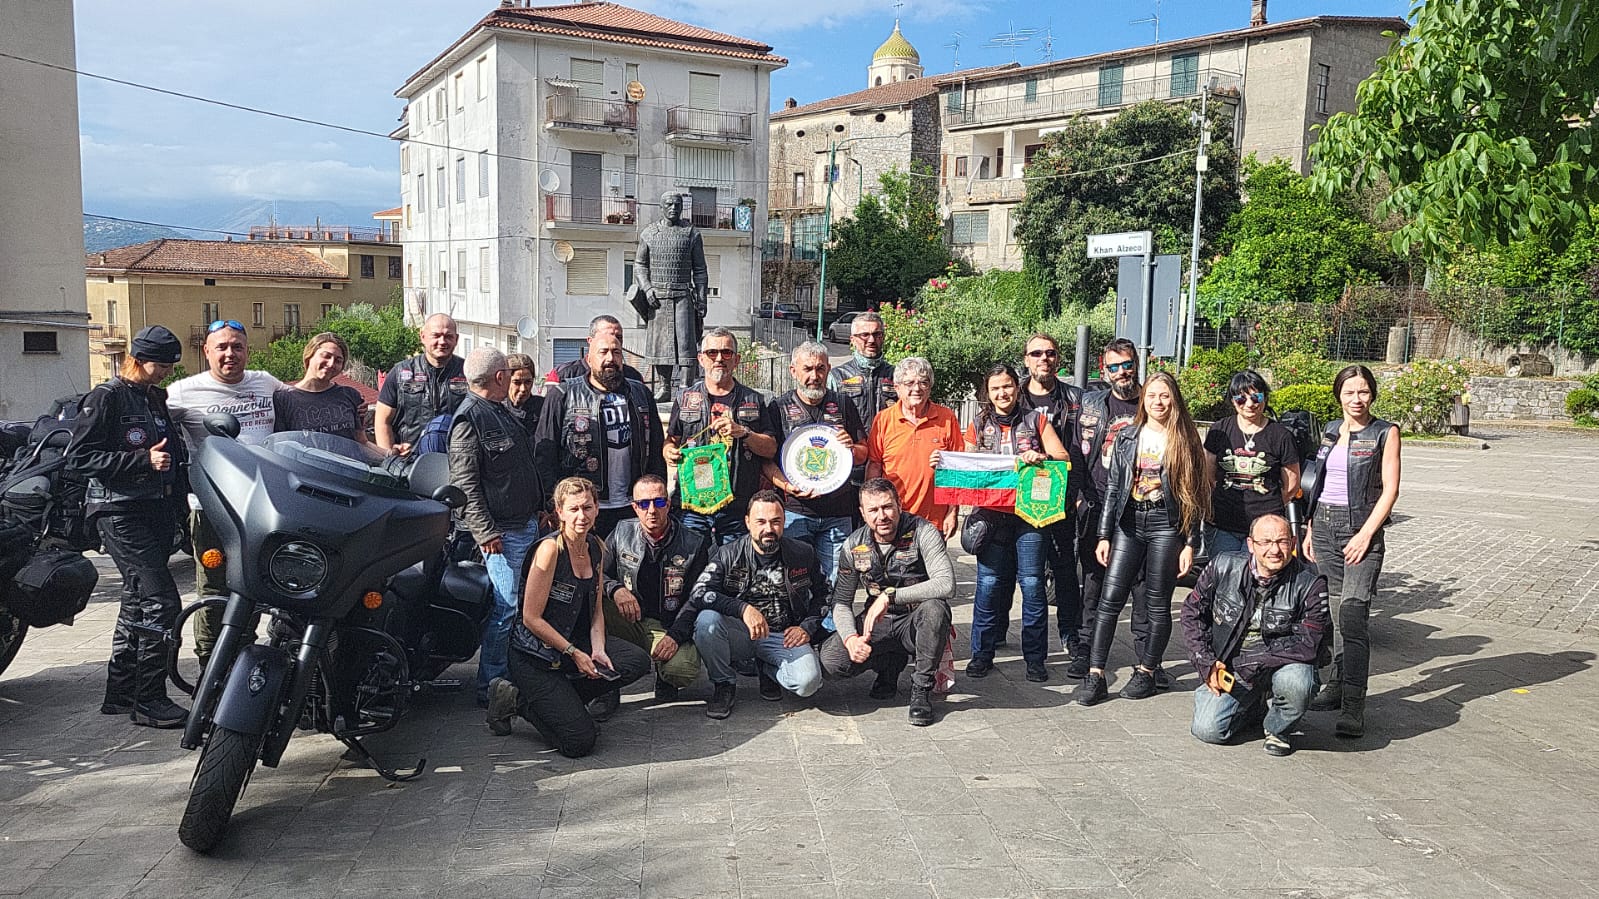 In moto dalla Bulgaria a Celle di Bulgheria: la missione di 50 motociclisti per recapitare una lettera al sindaco